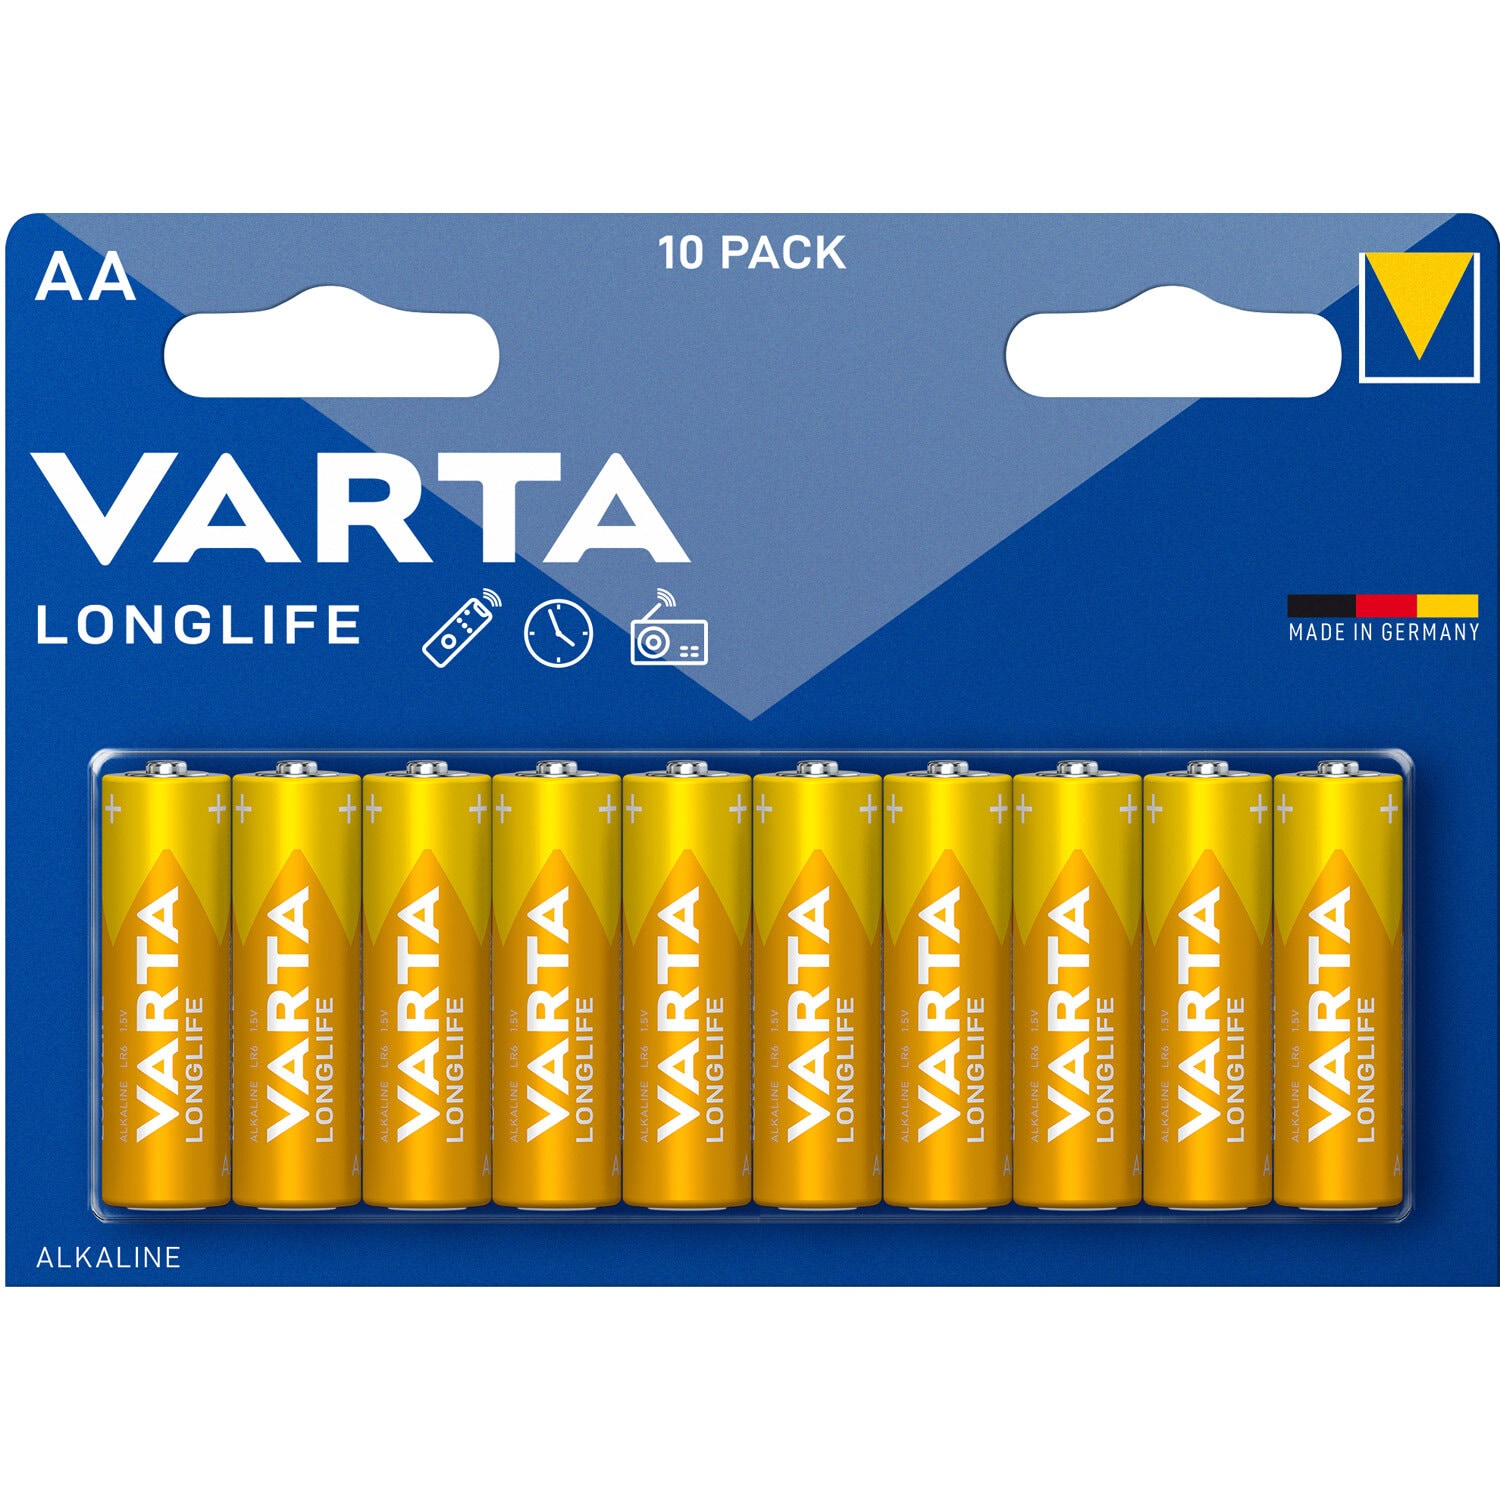 Varta Longlife AA / LR6 batteri 10-pakning - Elkjøp